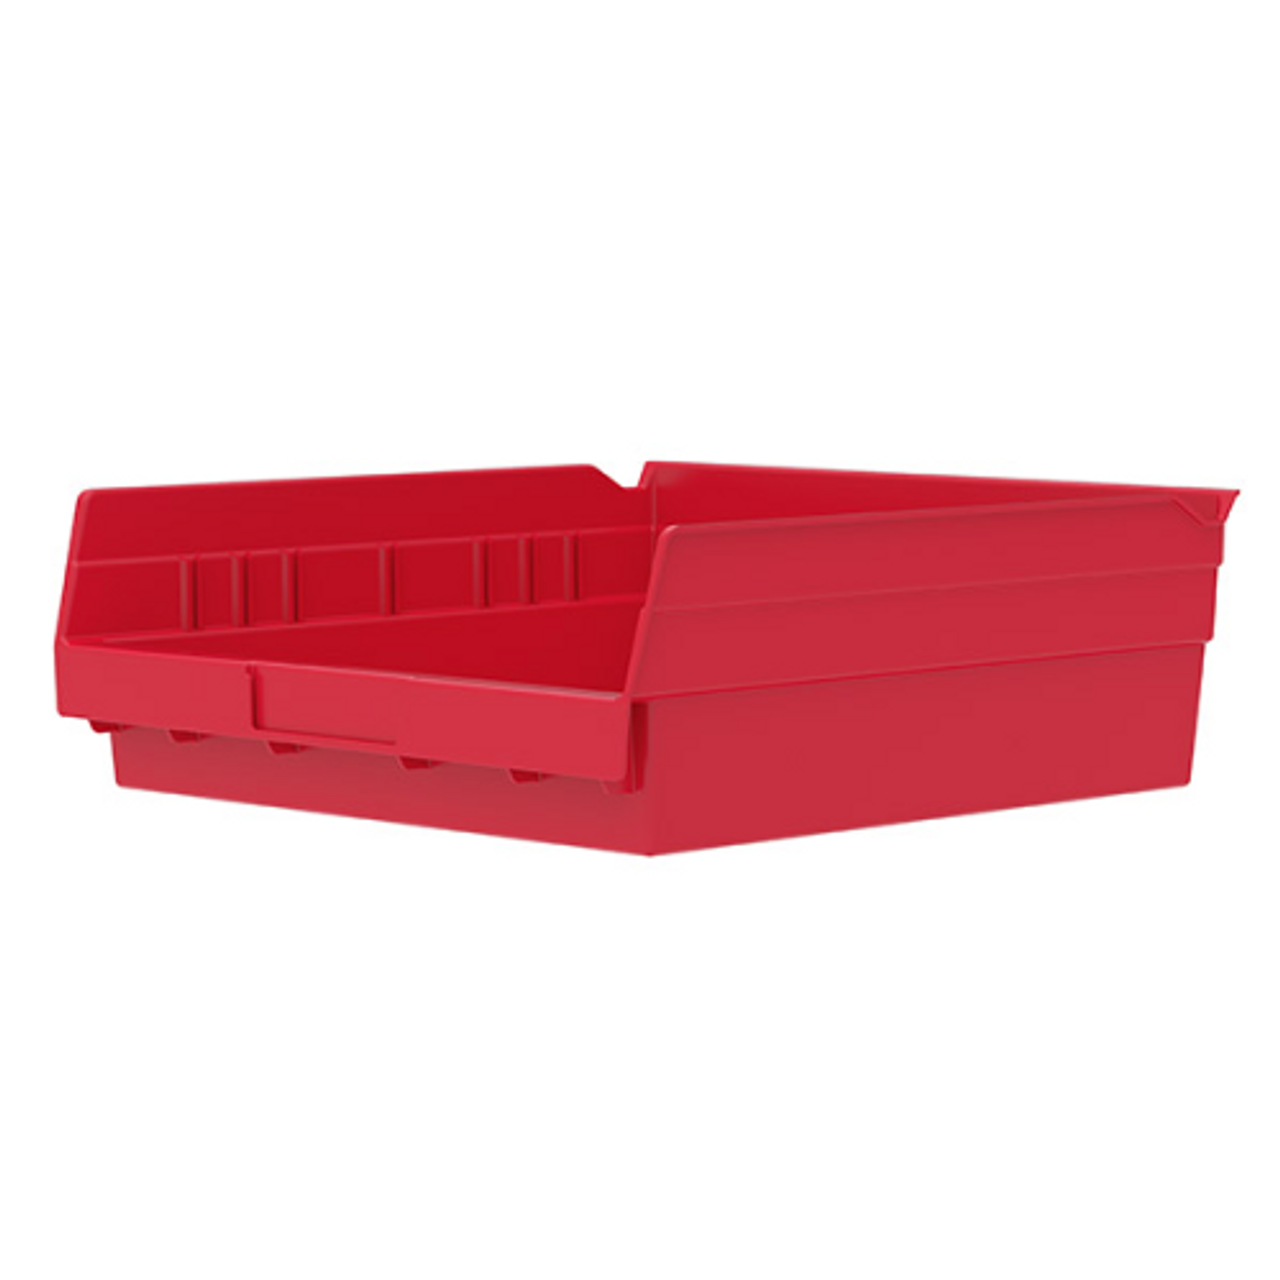 30170 11-5/8x11-1/8x4 Red Shelf